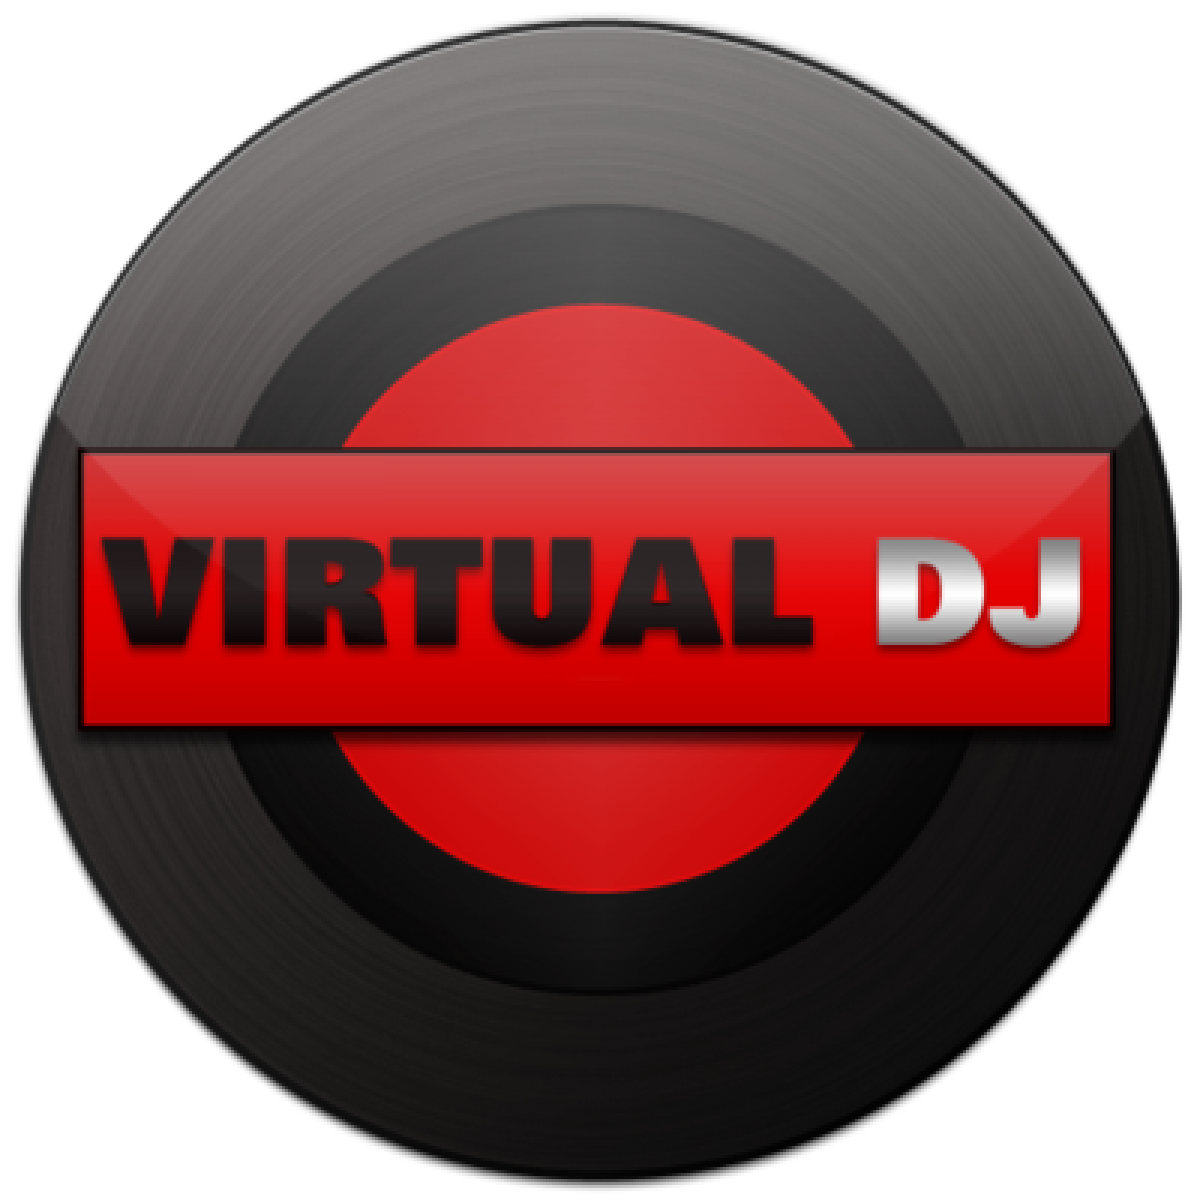 Atomix Virtual Dj Pro 5. 2 Free Download